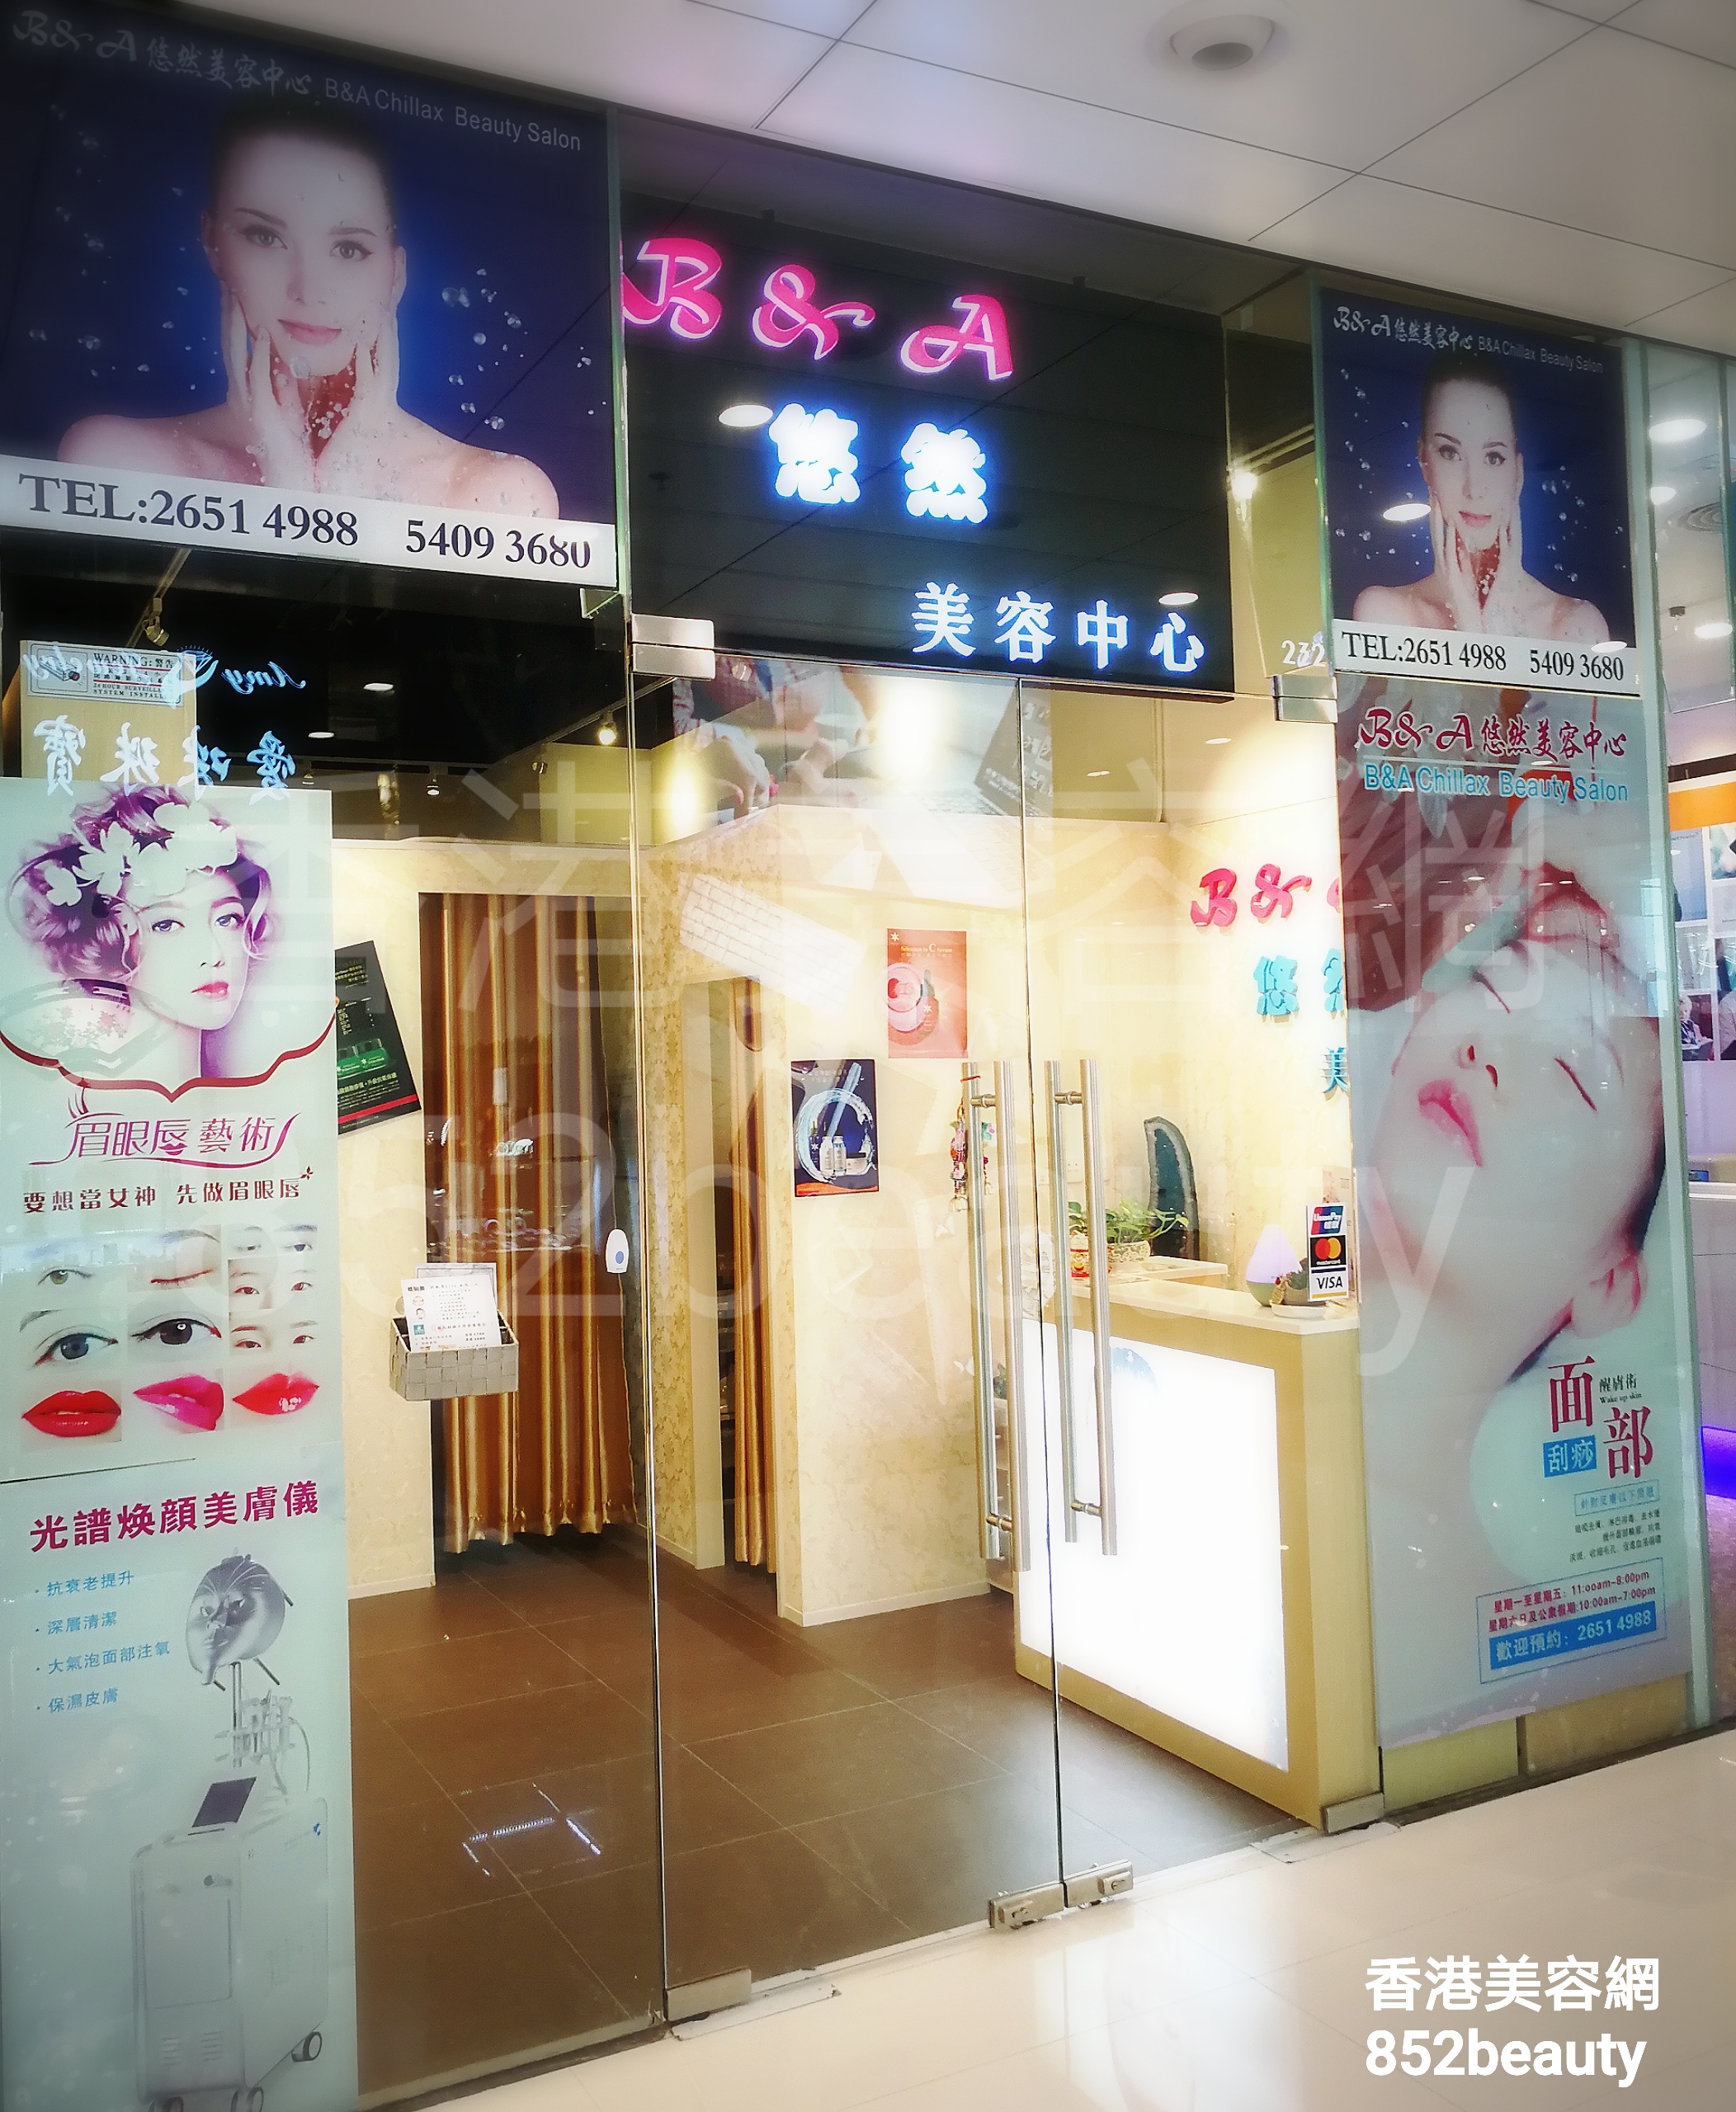 香港美容網 Hong Kong Beauty Salon 美容院 / 美容師: B&A 悠然美容中心